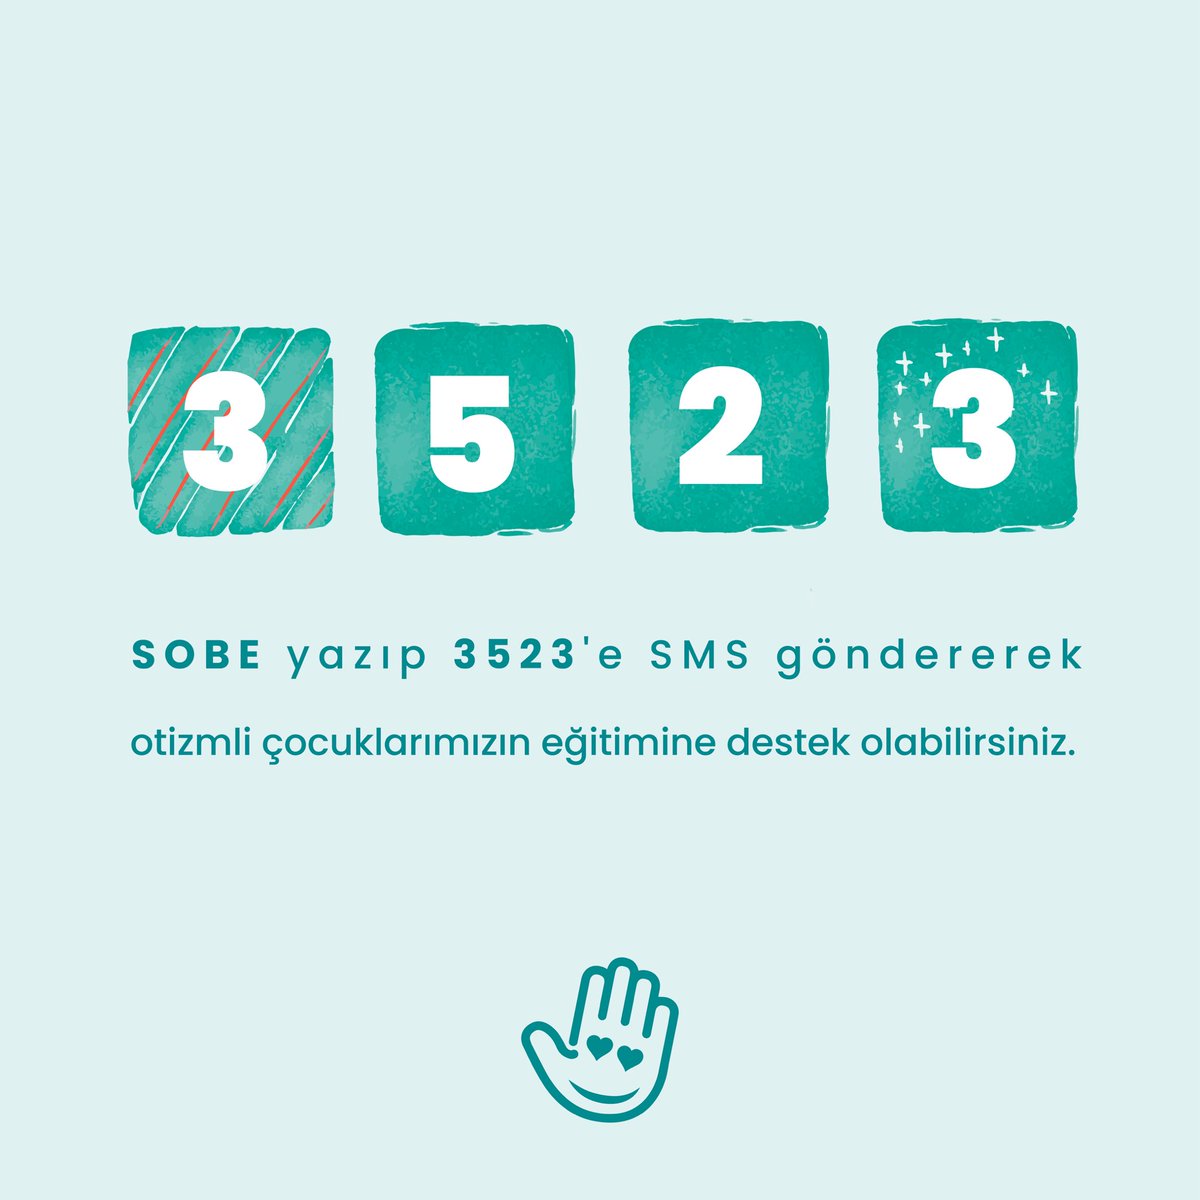 Her destek, bir umut demektir. 🧡 SOBE yazıp 3523'e SMS göndererek 40 TL bağışta bulunabilirsiniz. 🤗 Ayrıca sobe.org.tr adresinden de online bağışta bulunabilirsiniz. | #otizm #autism #sobeotizm